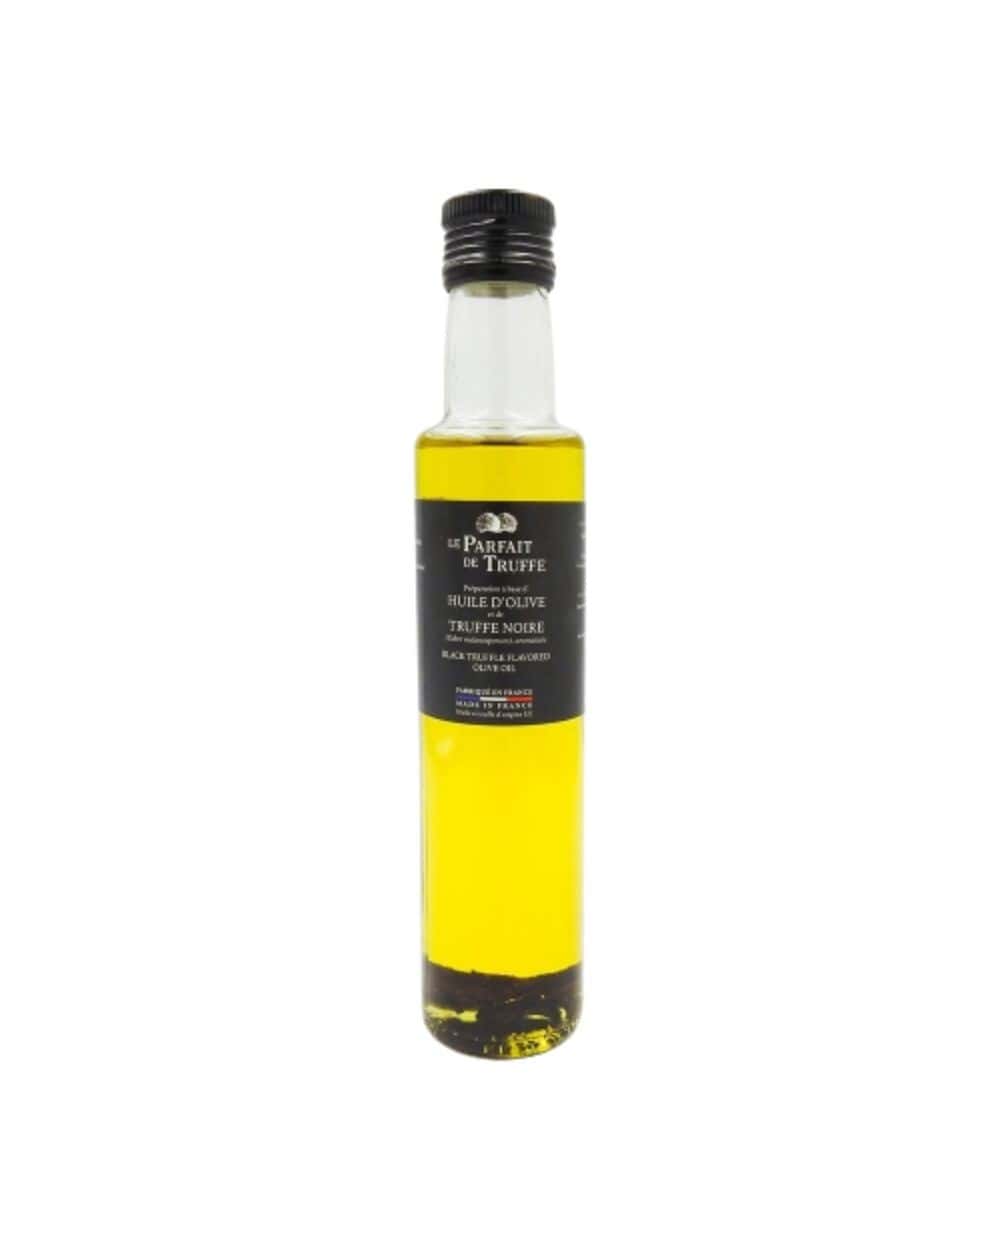 acheter huile d'olive Truffe